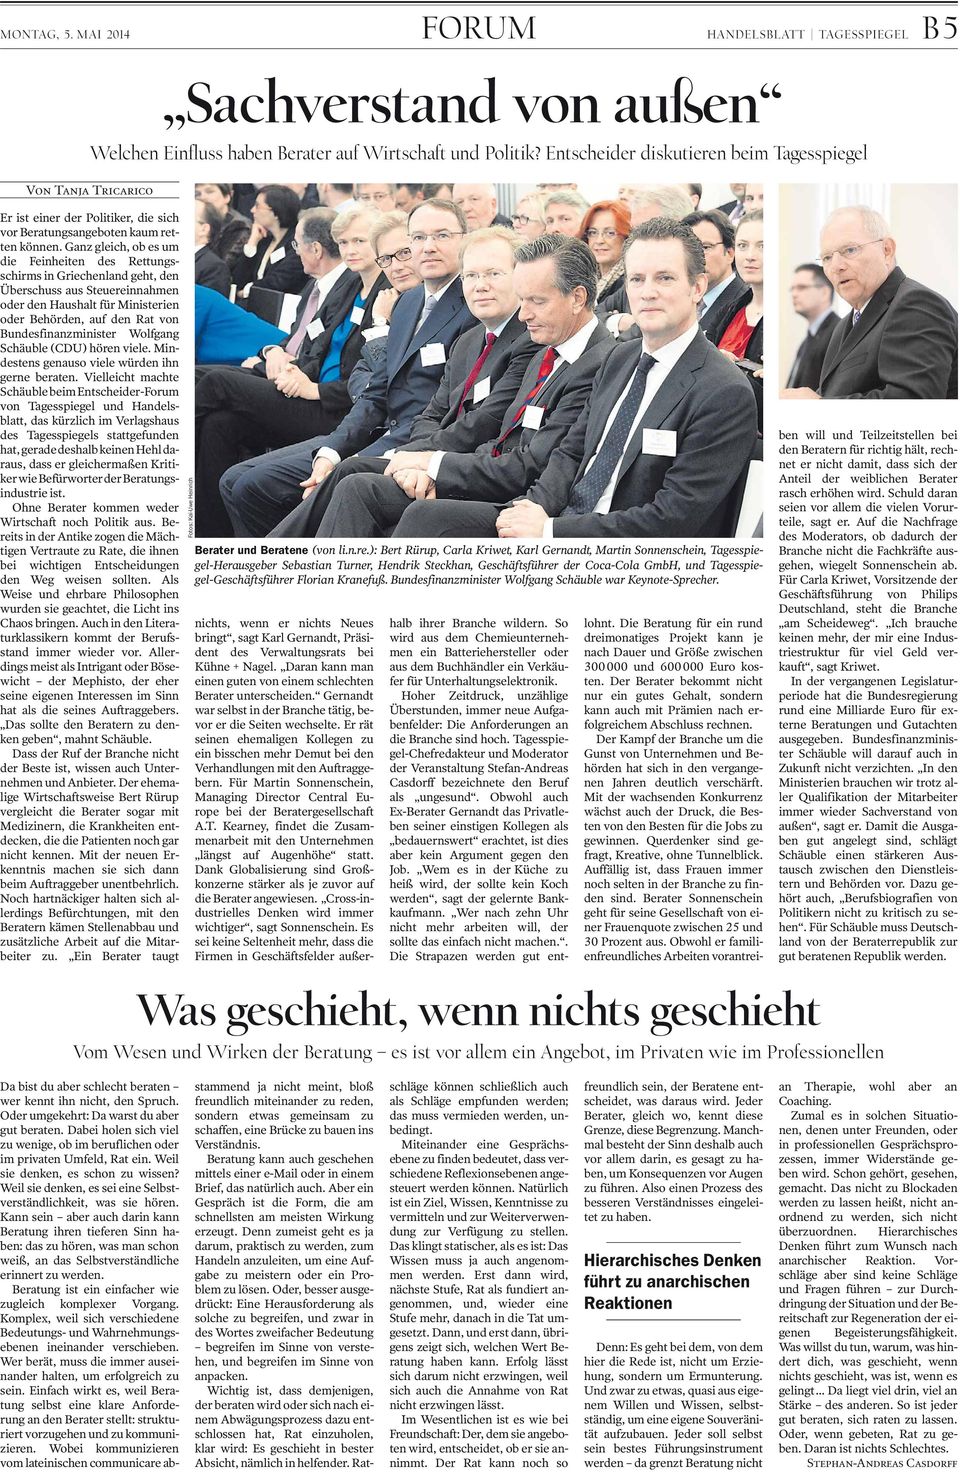 Wolfgang Schäuble (CDU) hören viele. Mindestens genauso viele würden ihn gerne beraten.